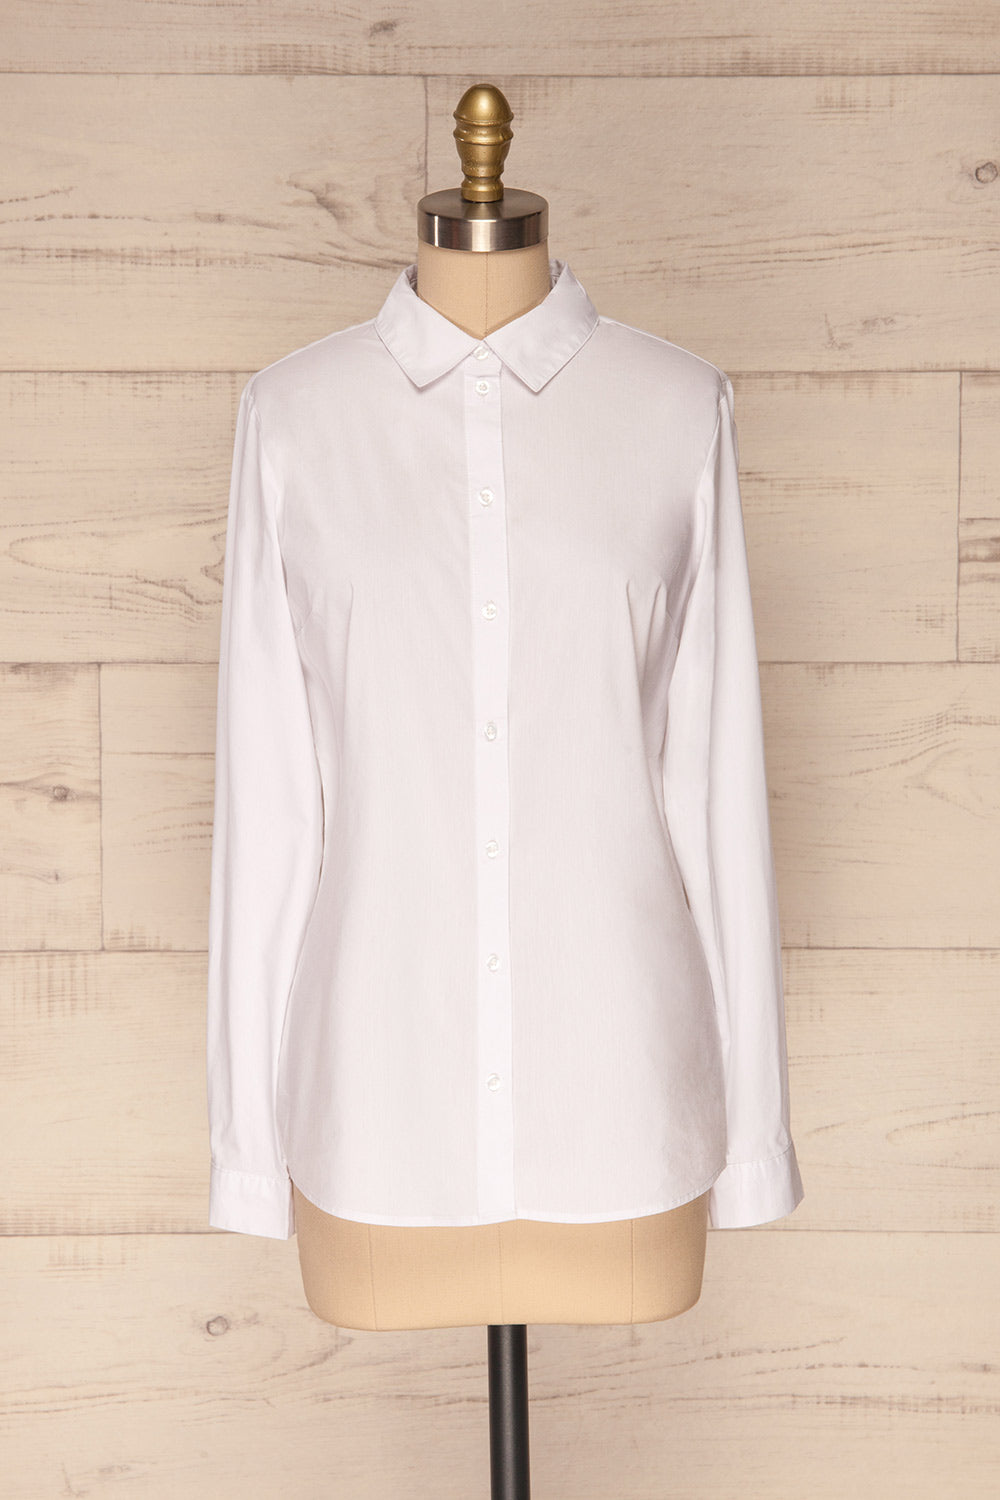 Eggodden Blanc White Long Sleeved Shirt | La Petite Garçonne front view 